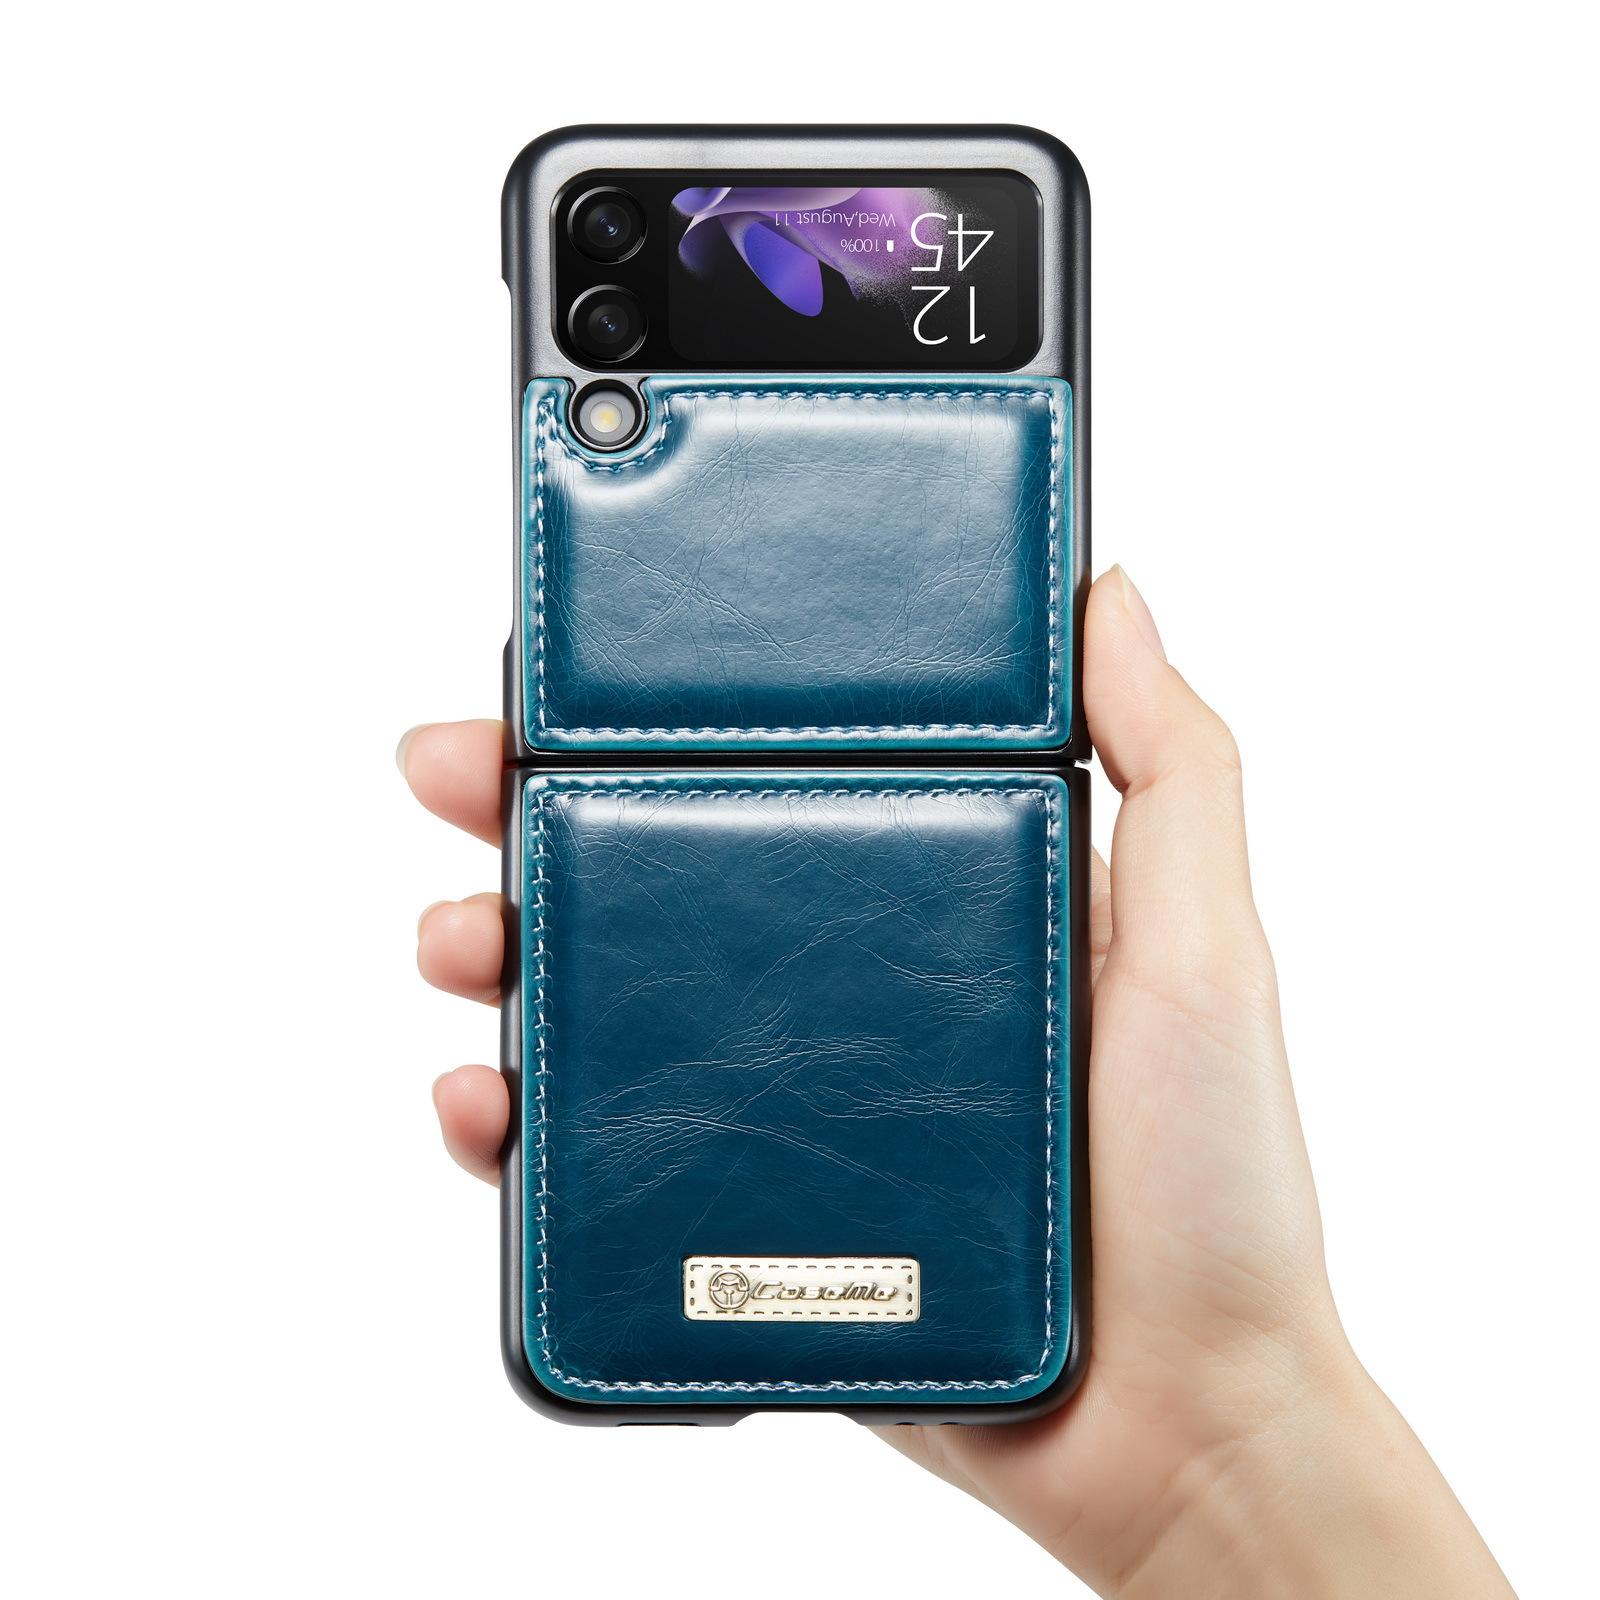 Premium Leather Flip 3/4 Phone Case